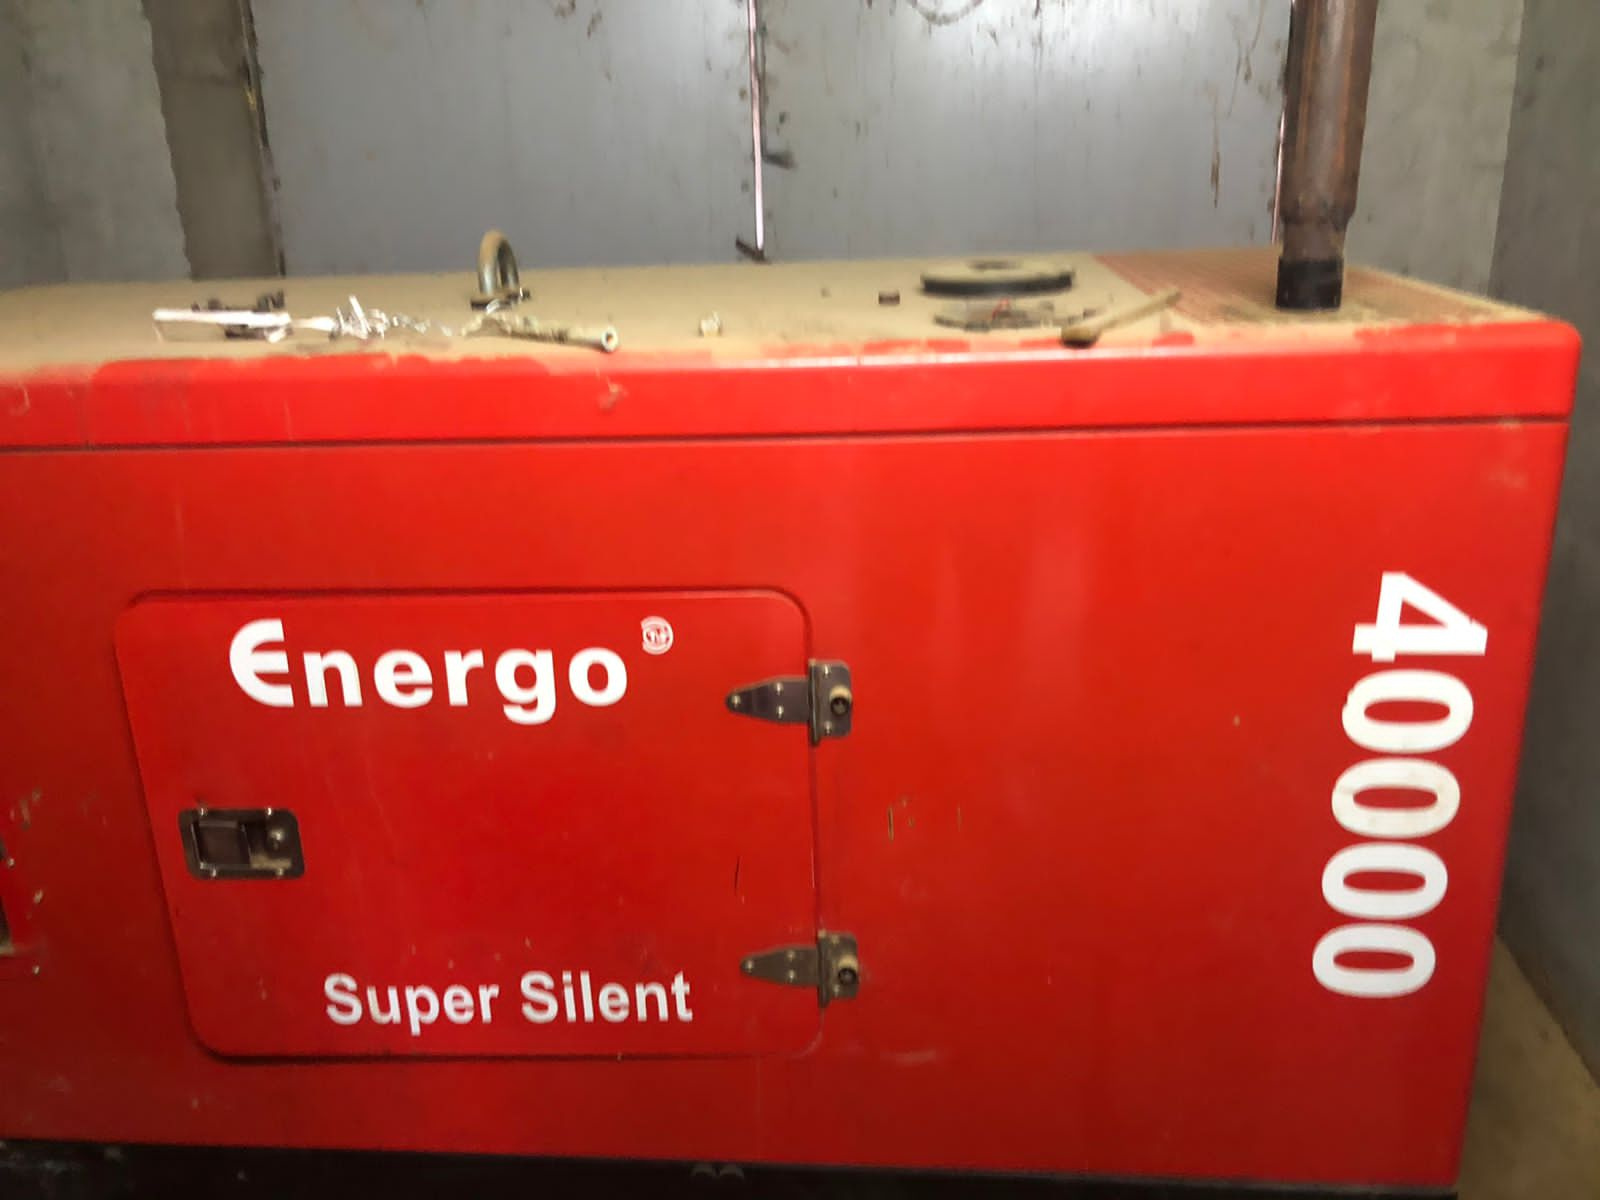  дизельный 40 кВт Energo Super Silent  Б/У в Тарусе по .